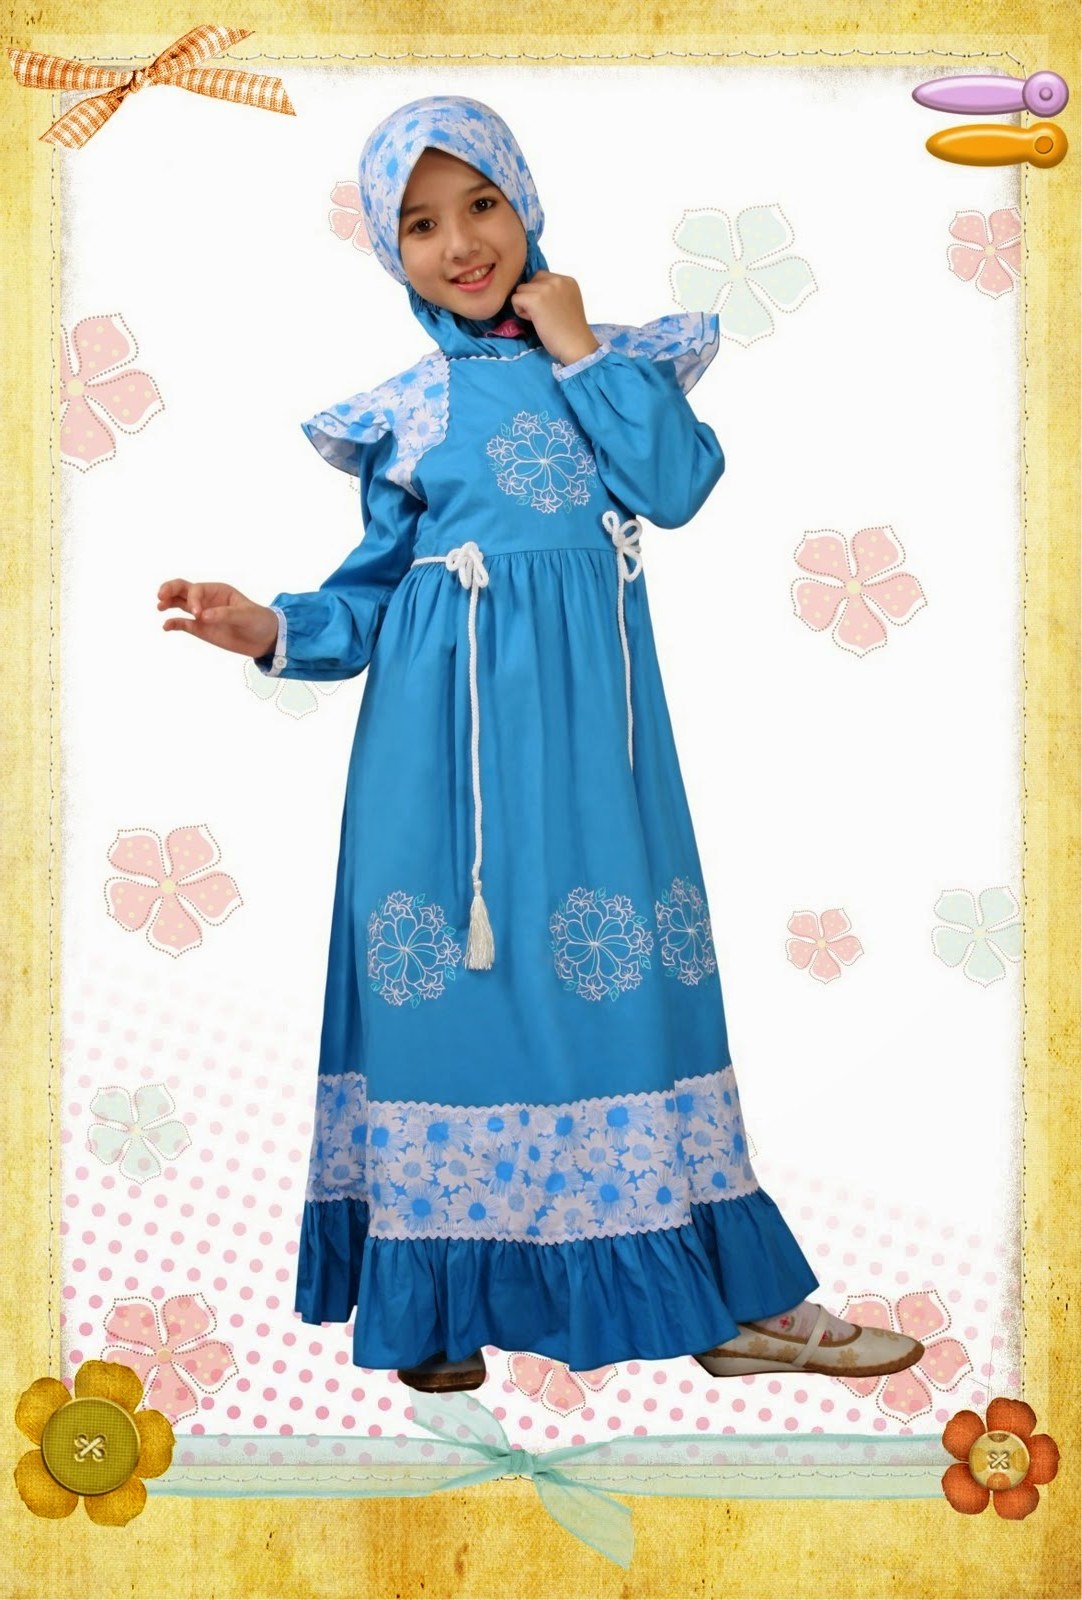 Bentuk Model Baju Lebaran Untuk Anak Perempuan U3dh Model Baju Pesta Muslim Anak Perempuan Model Baju Pesta